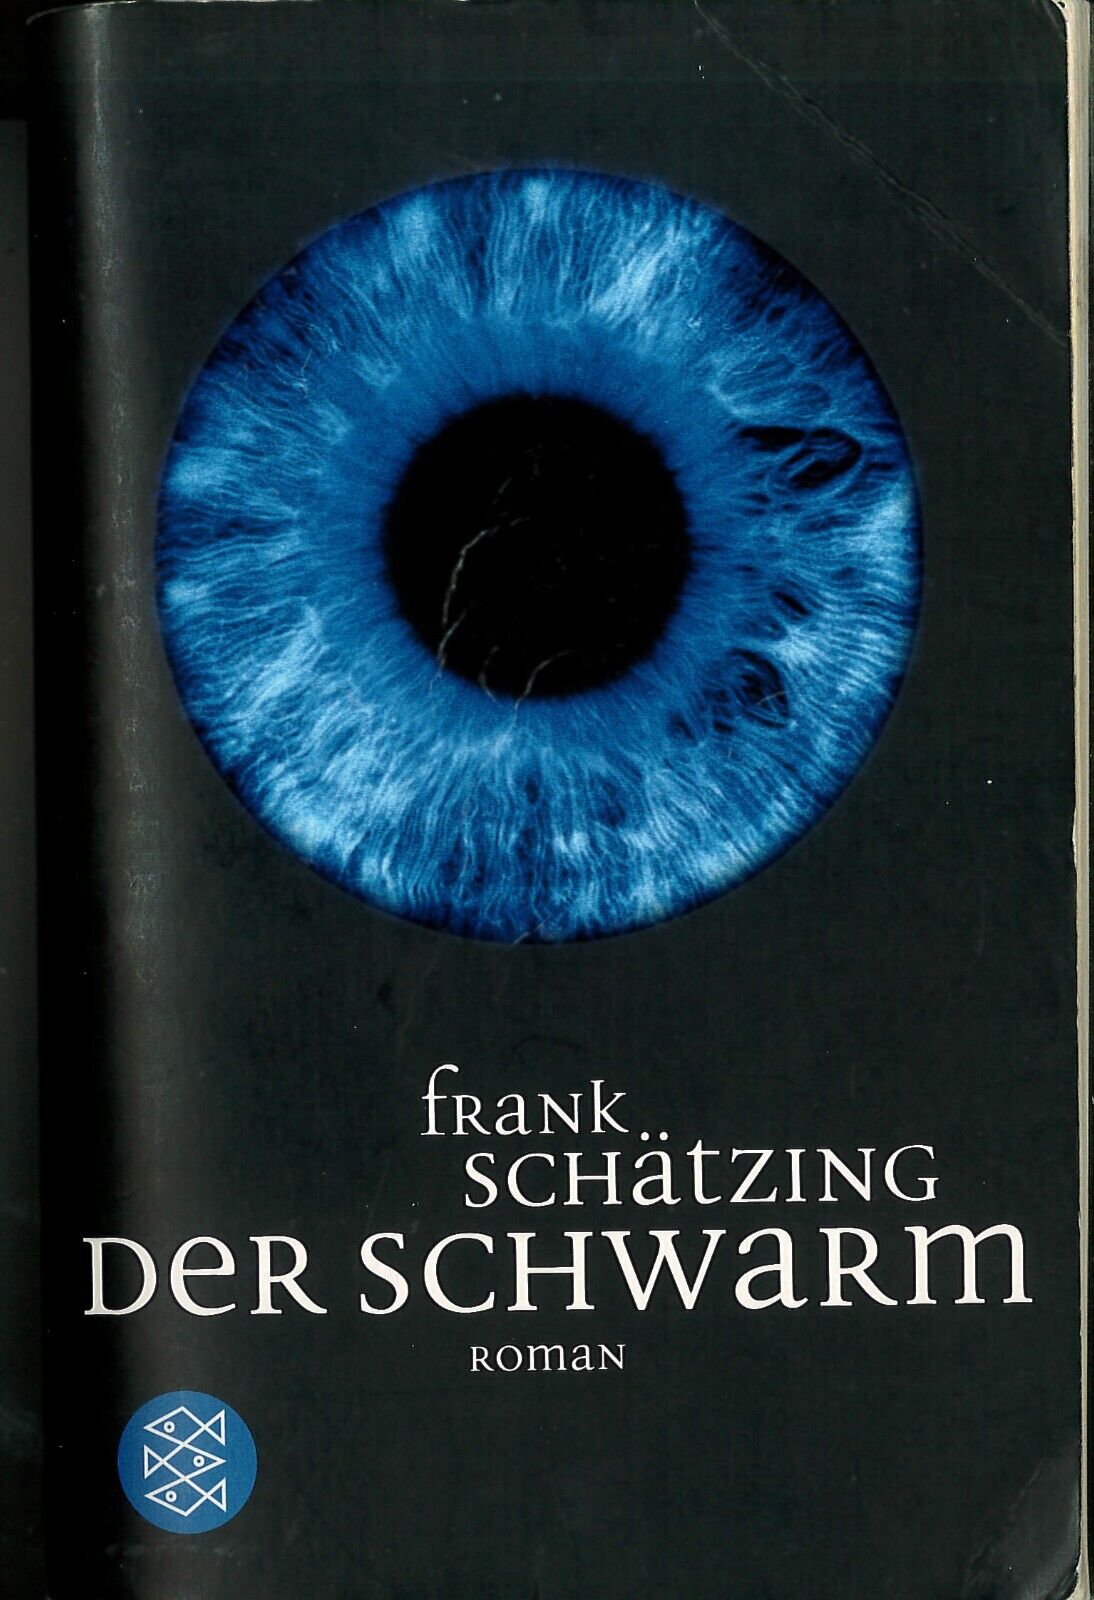 Schätzing, Frank: Der Schwarm - 2004 - 14. Auflage von 2007 - 999 Seiten